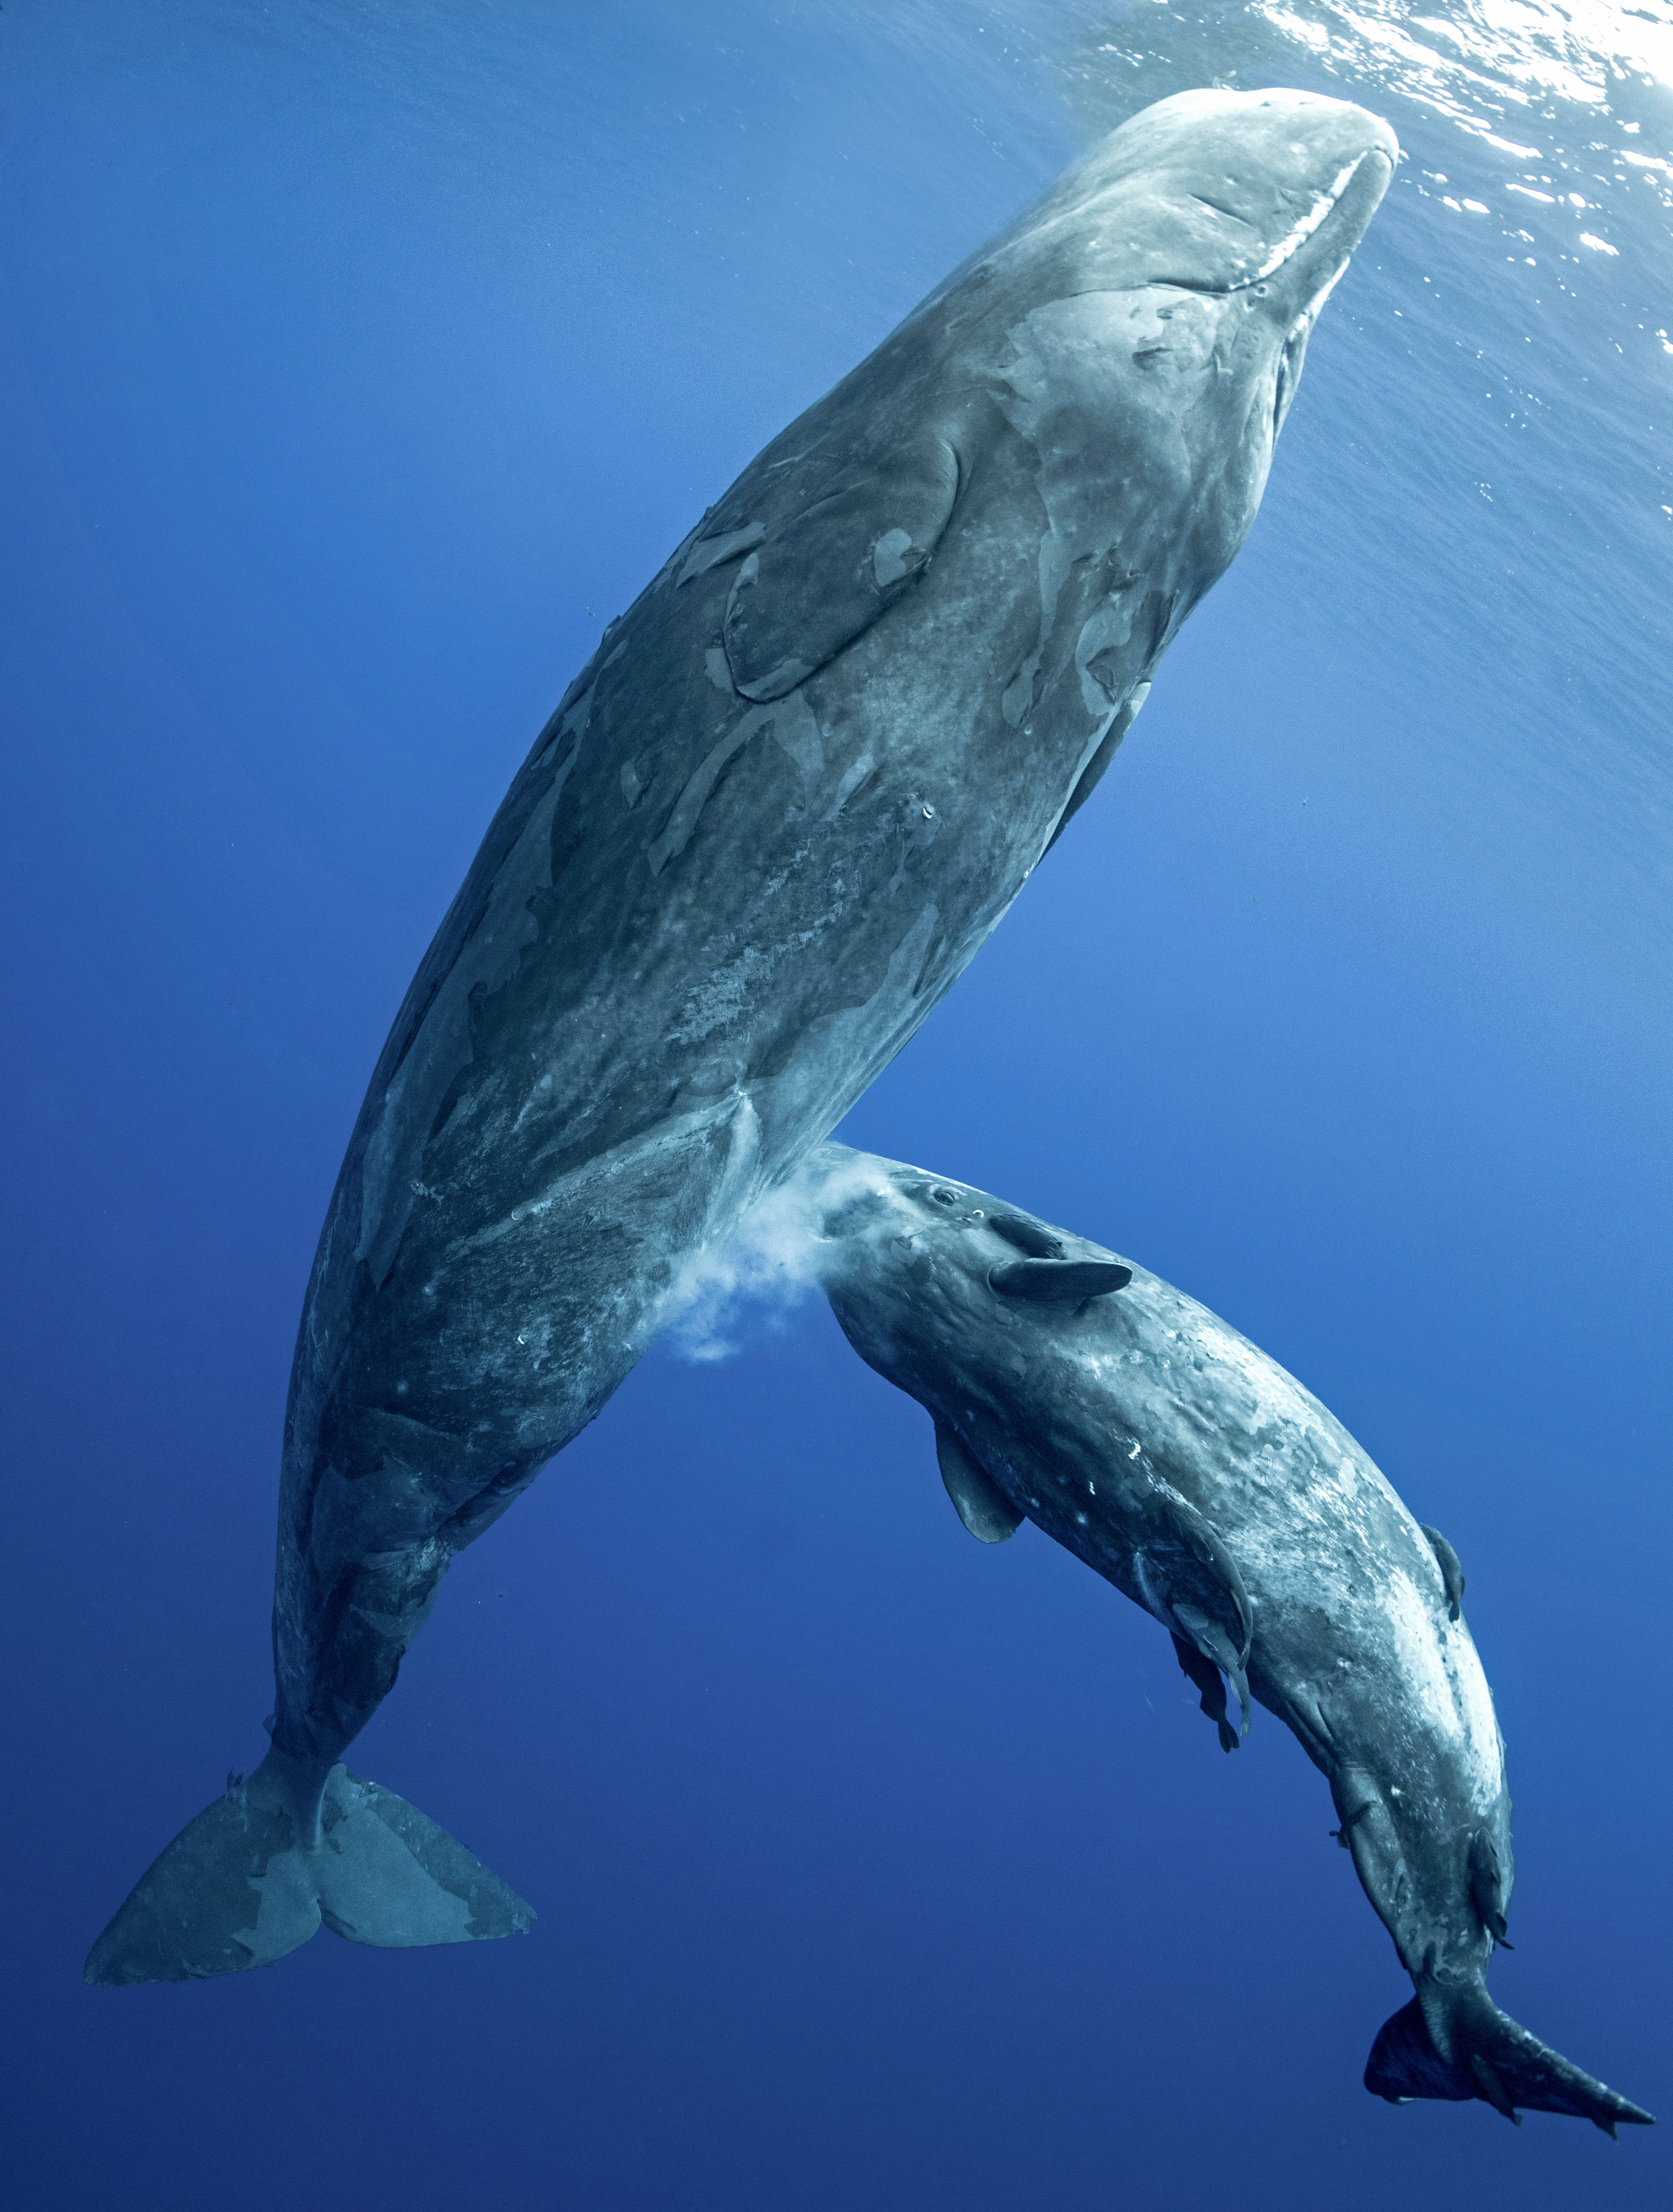 搁浅抹香鲸回归大海,专家解读施救过程中的经典操作